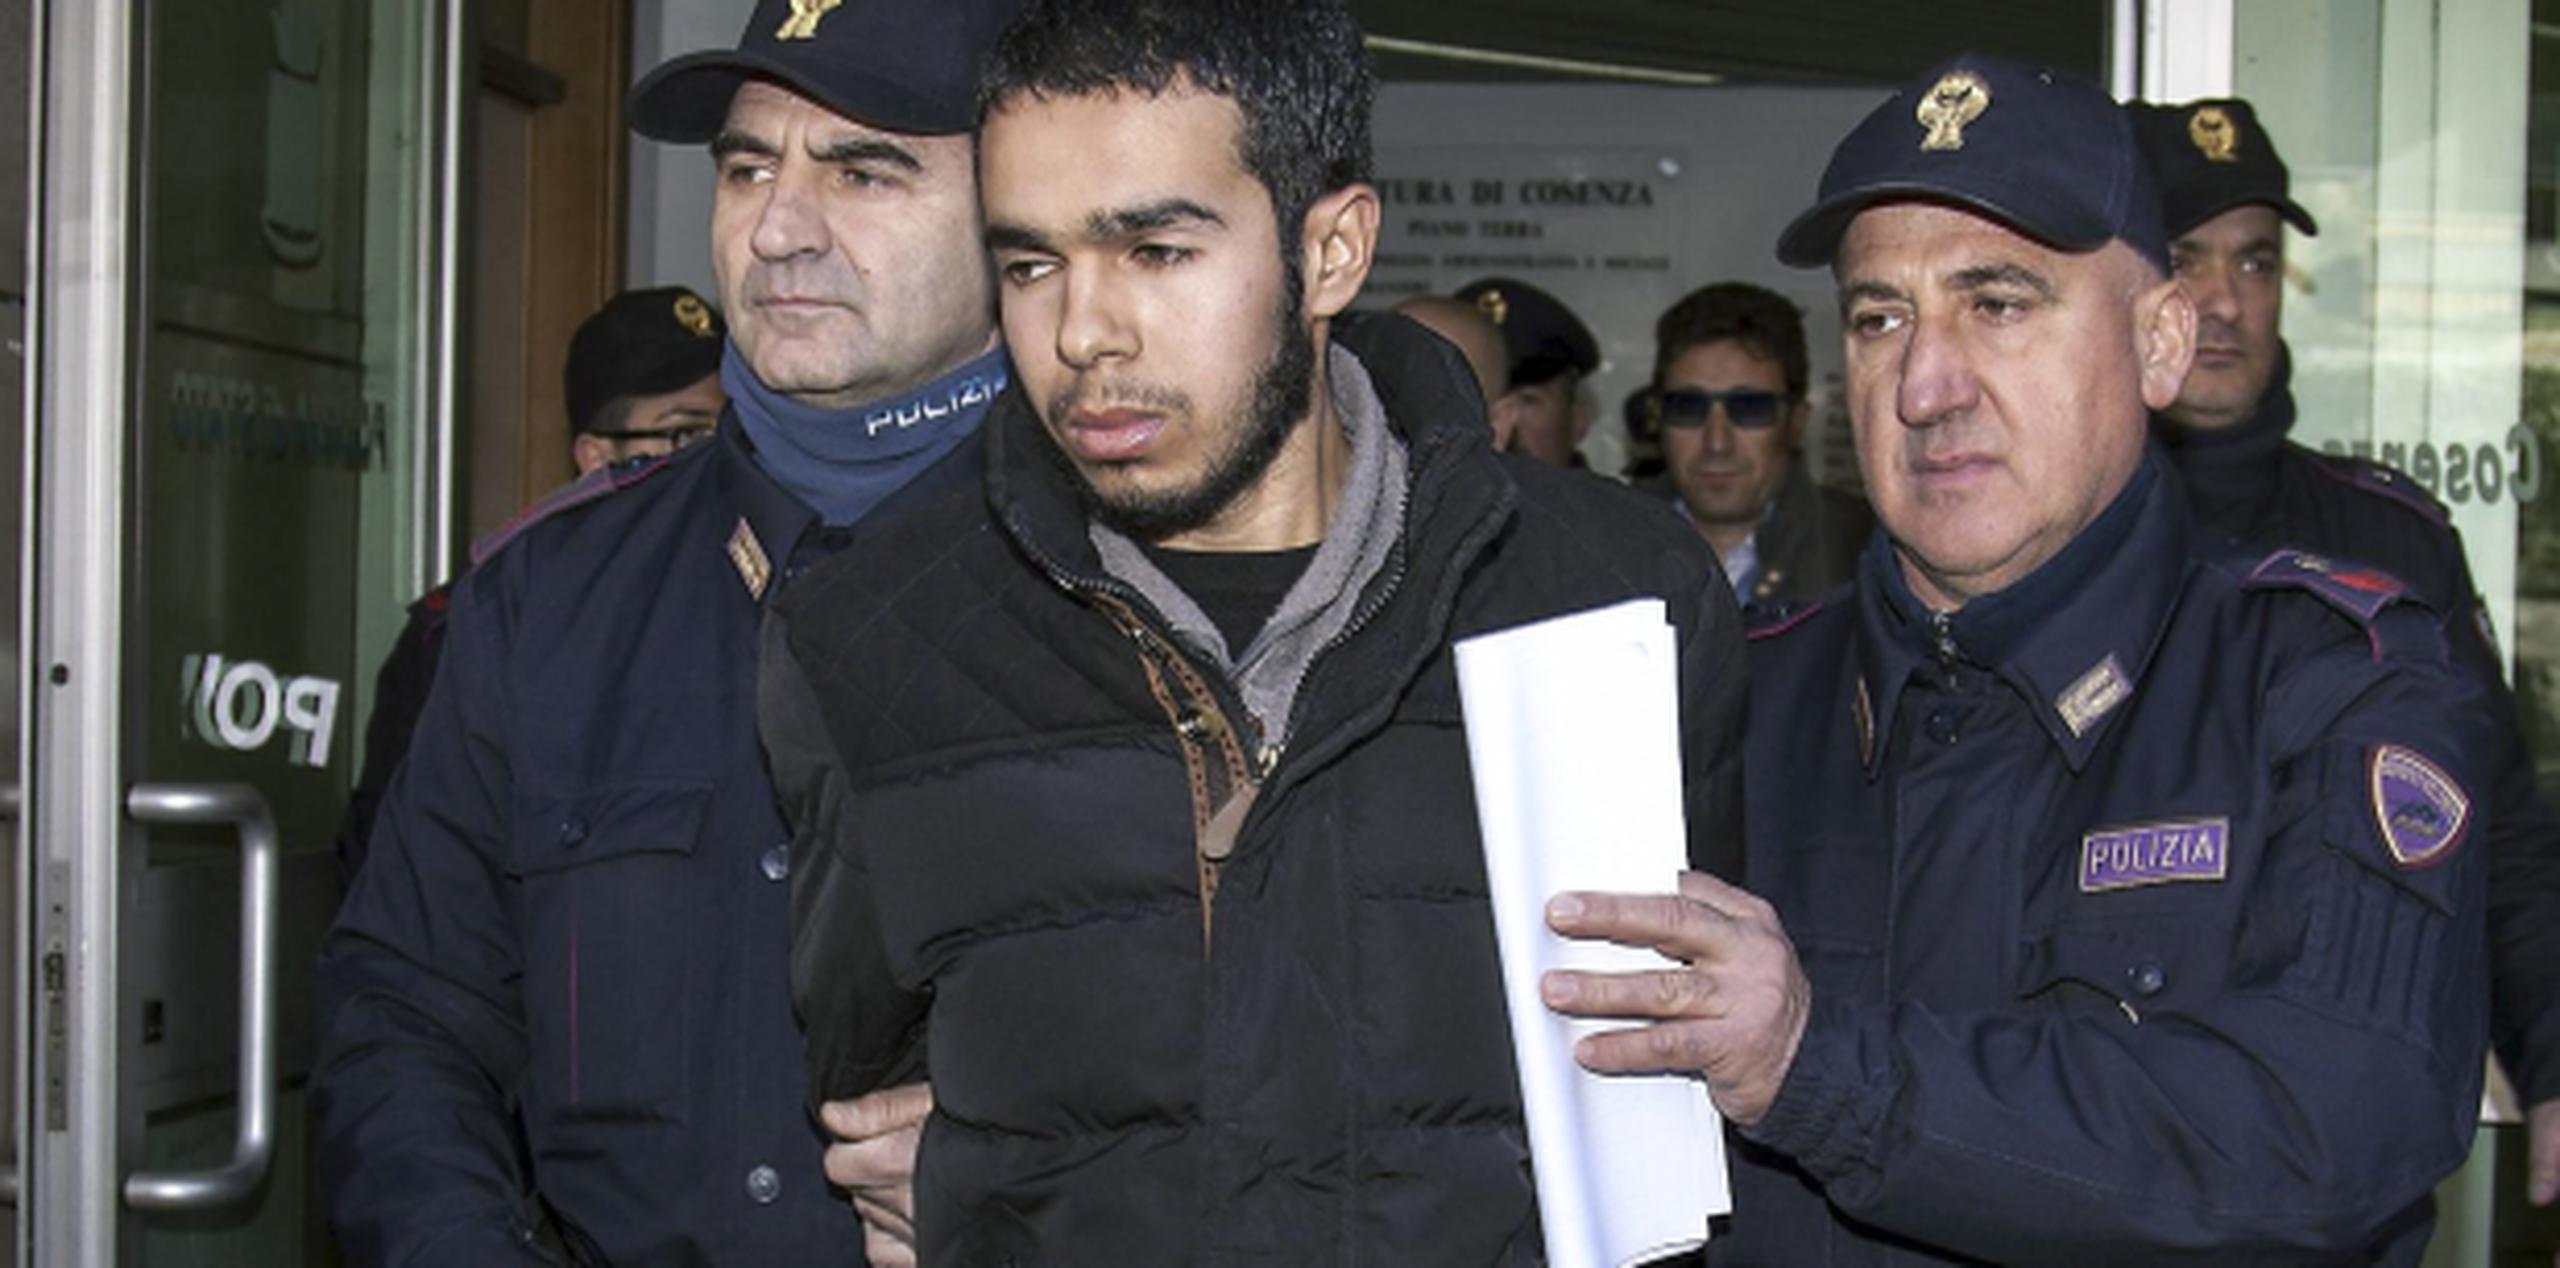 Mehdi Hami fue arrestado hoy en Italia porque se sospecha que buscaba unirse a Estado Islámico. (AP)